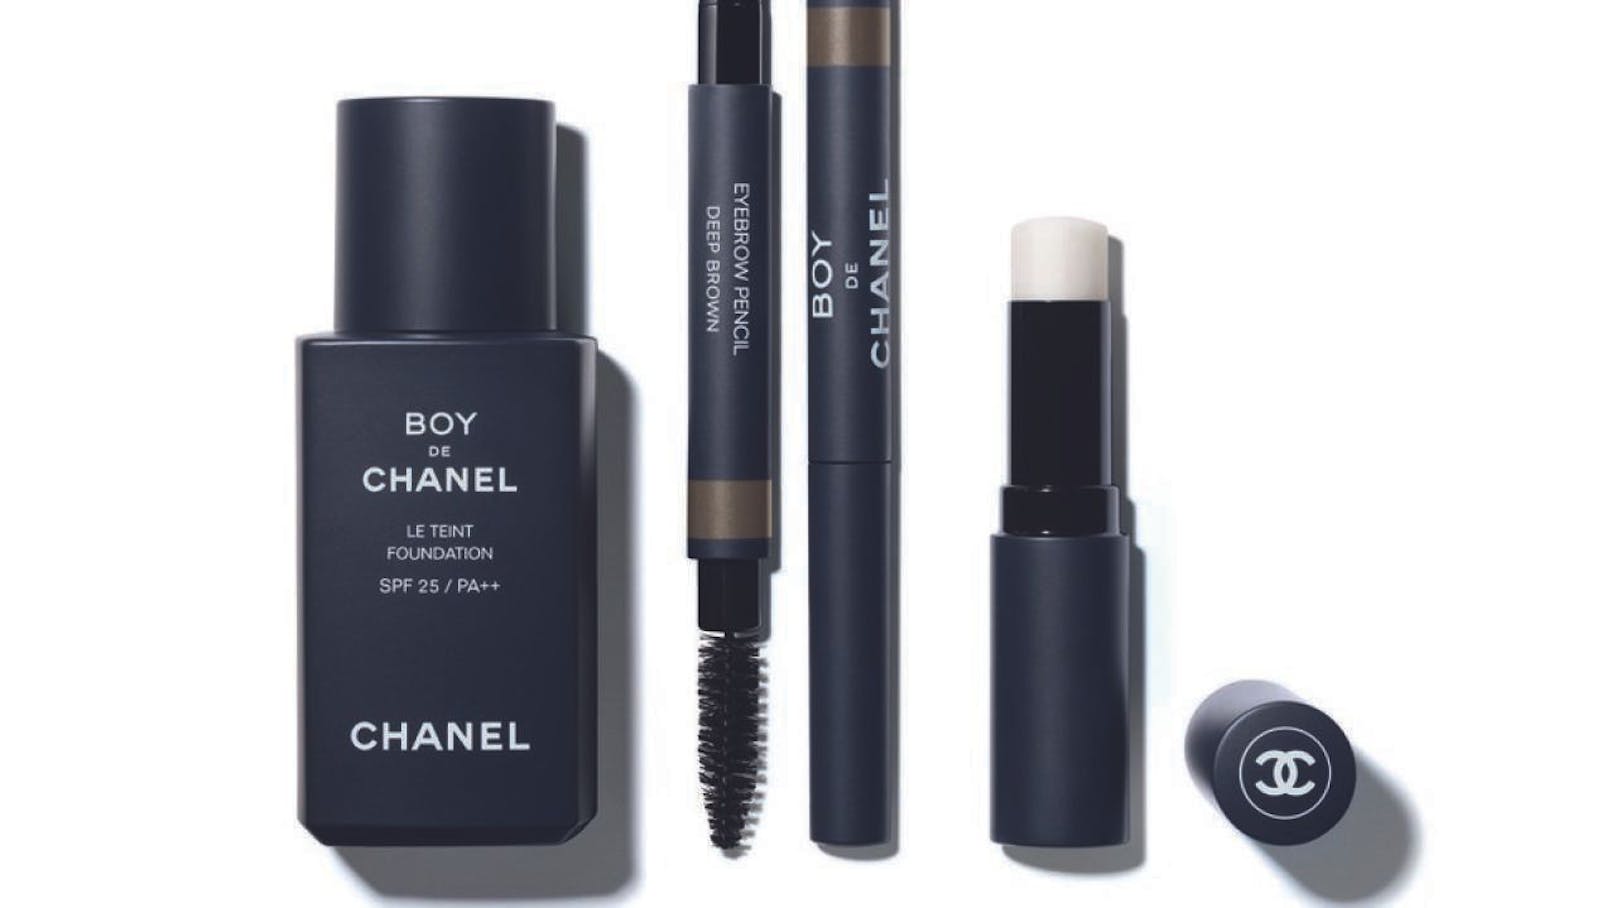  Ab Januar 2019 soll die &quot;Boy de Chanel&quot;-Kollektion in den Stores von Chanel zu kaufen sein.